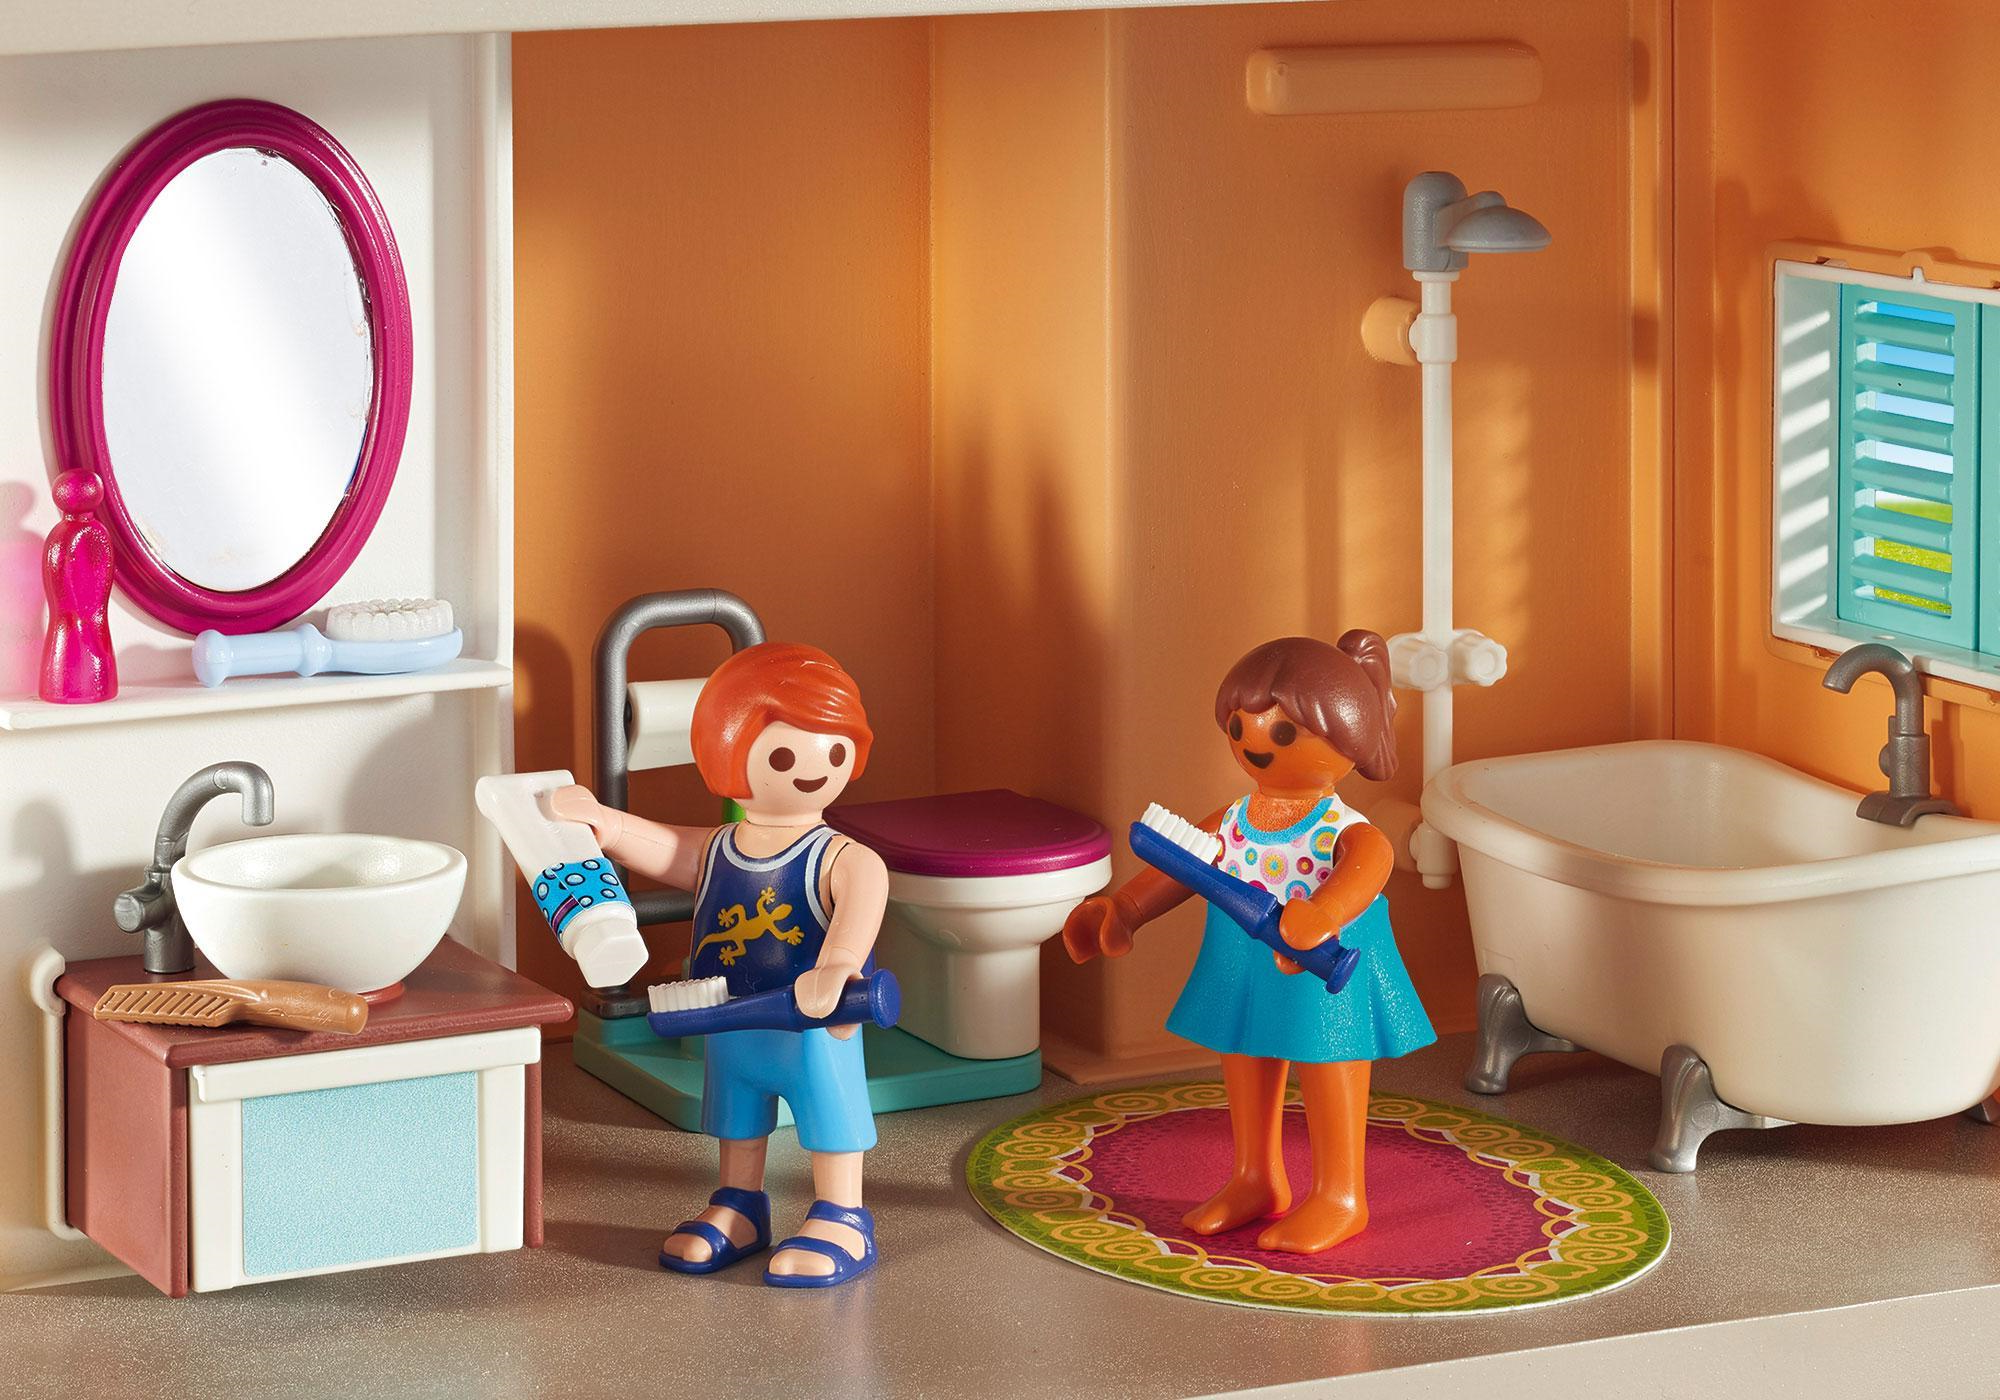 Maison moderne playmobil- se laver les dents ensemble.